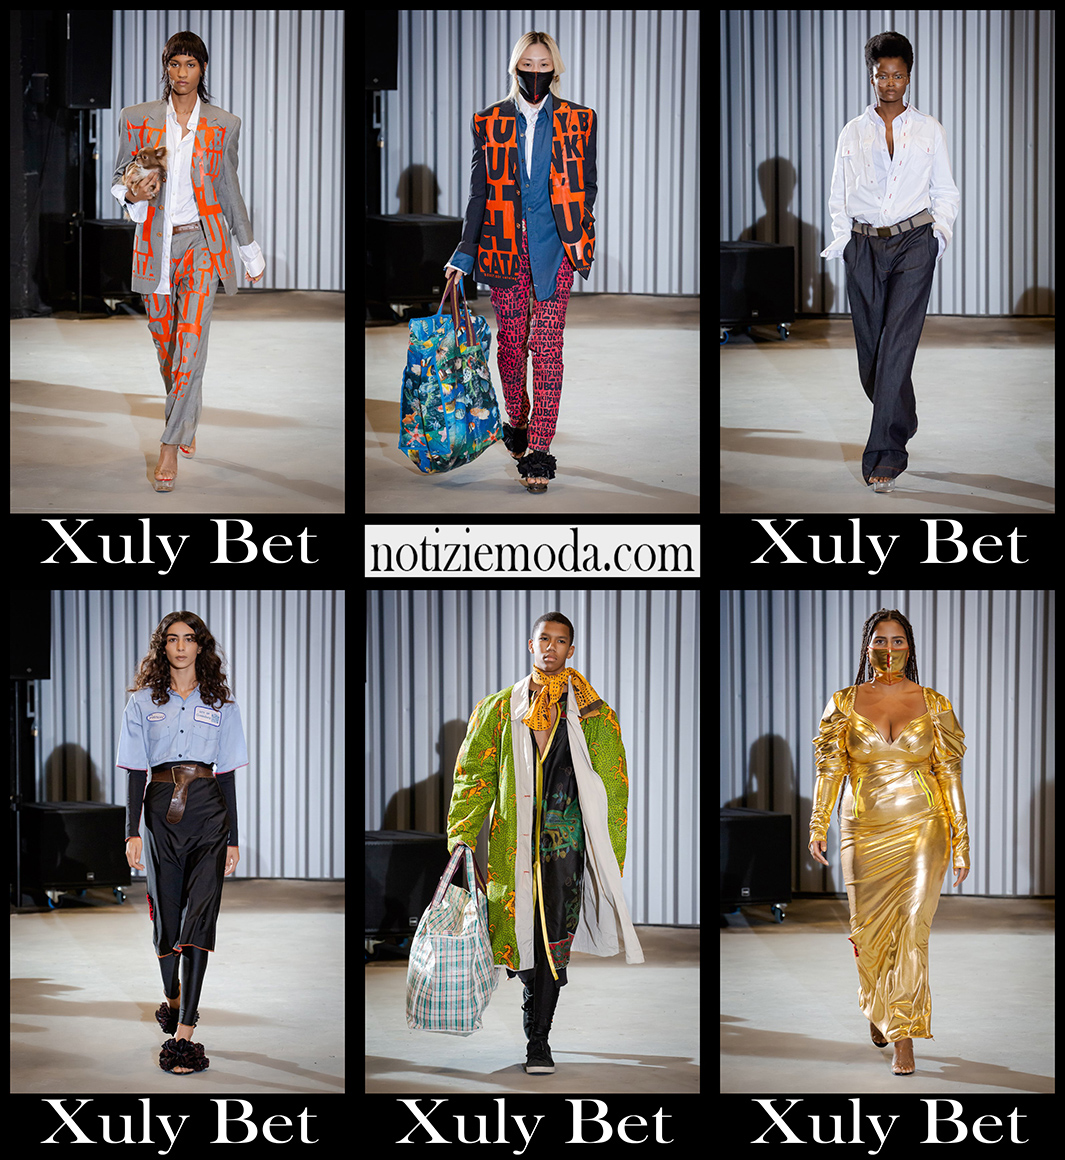 Collezione Xuly Bet primavera estate 2021 moda donna